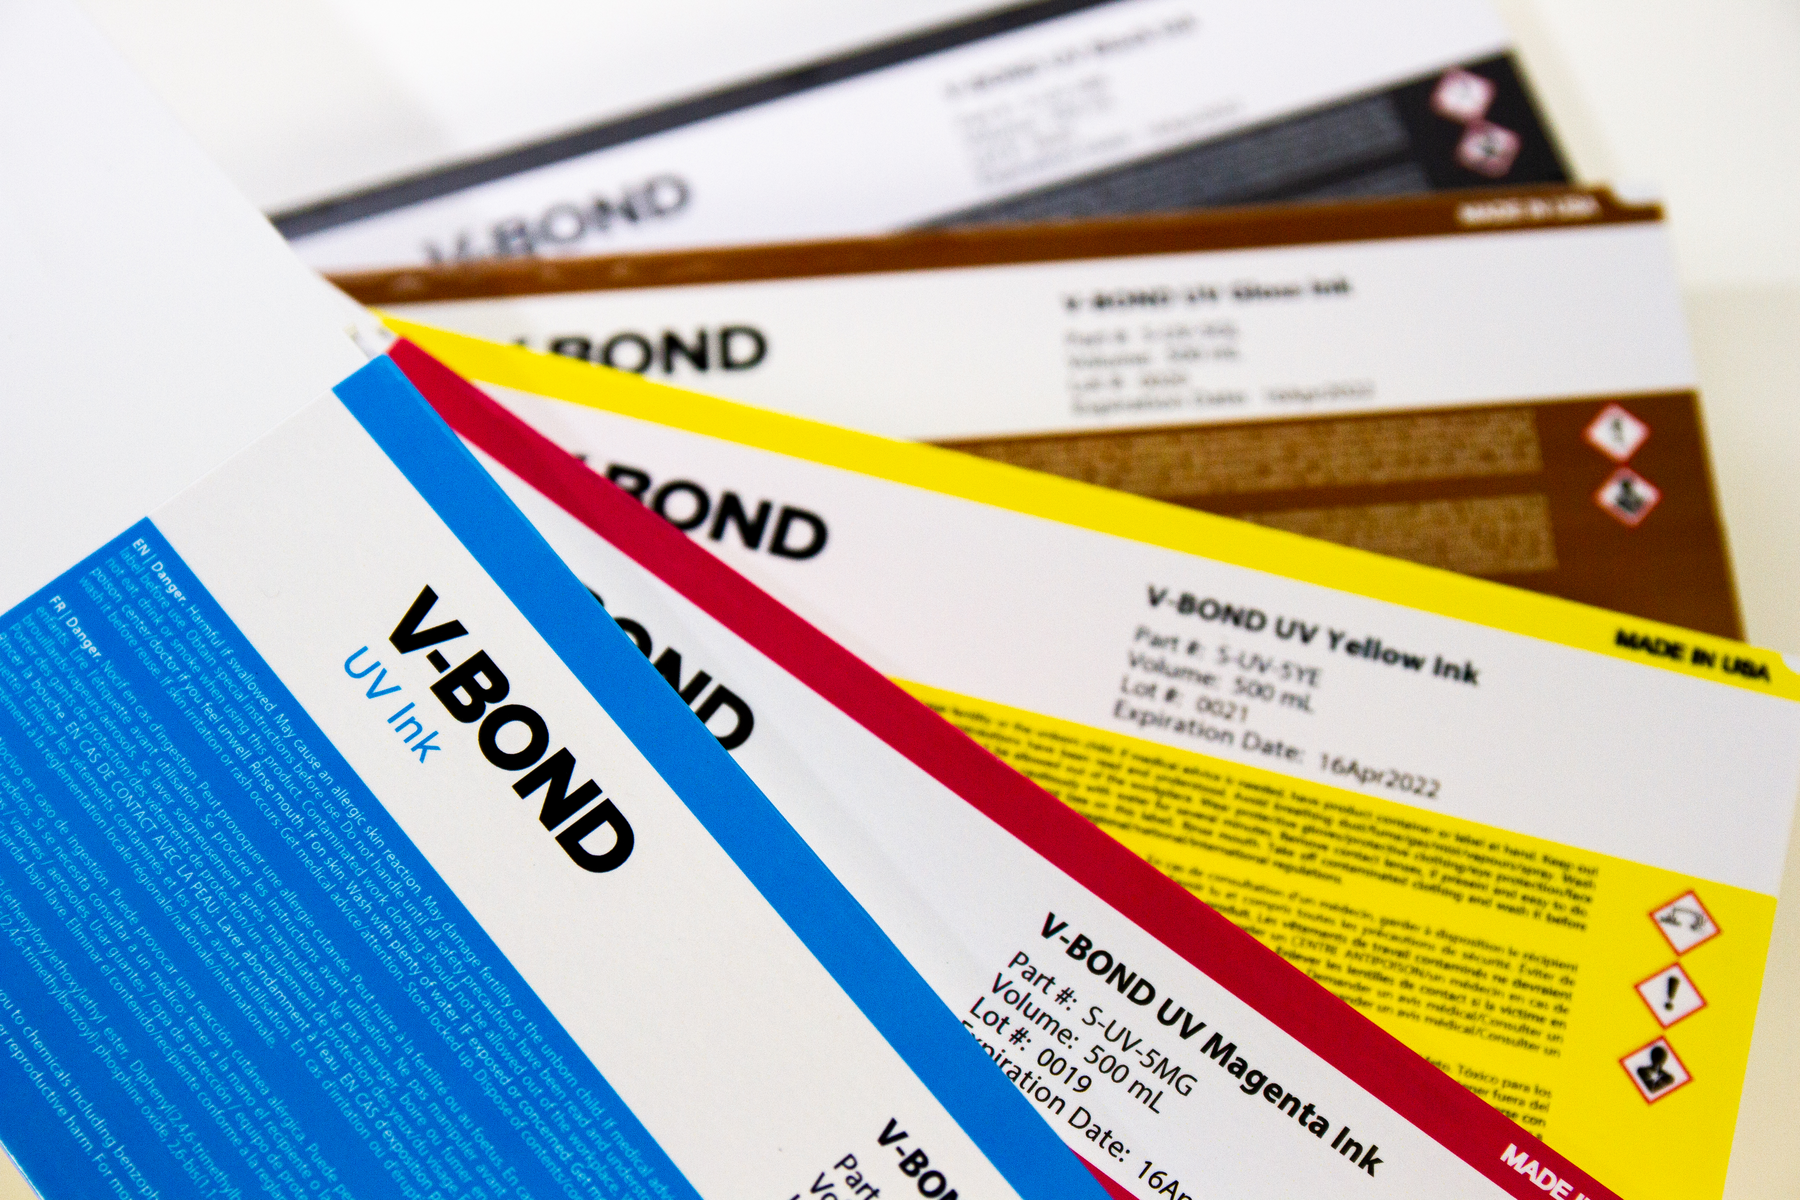 Roland V-Bond UV ink 500ml 